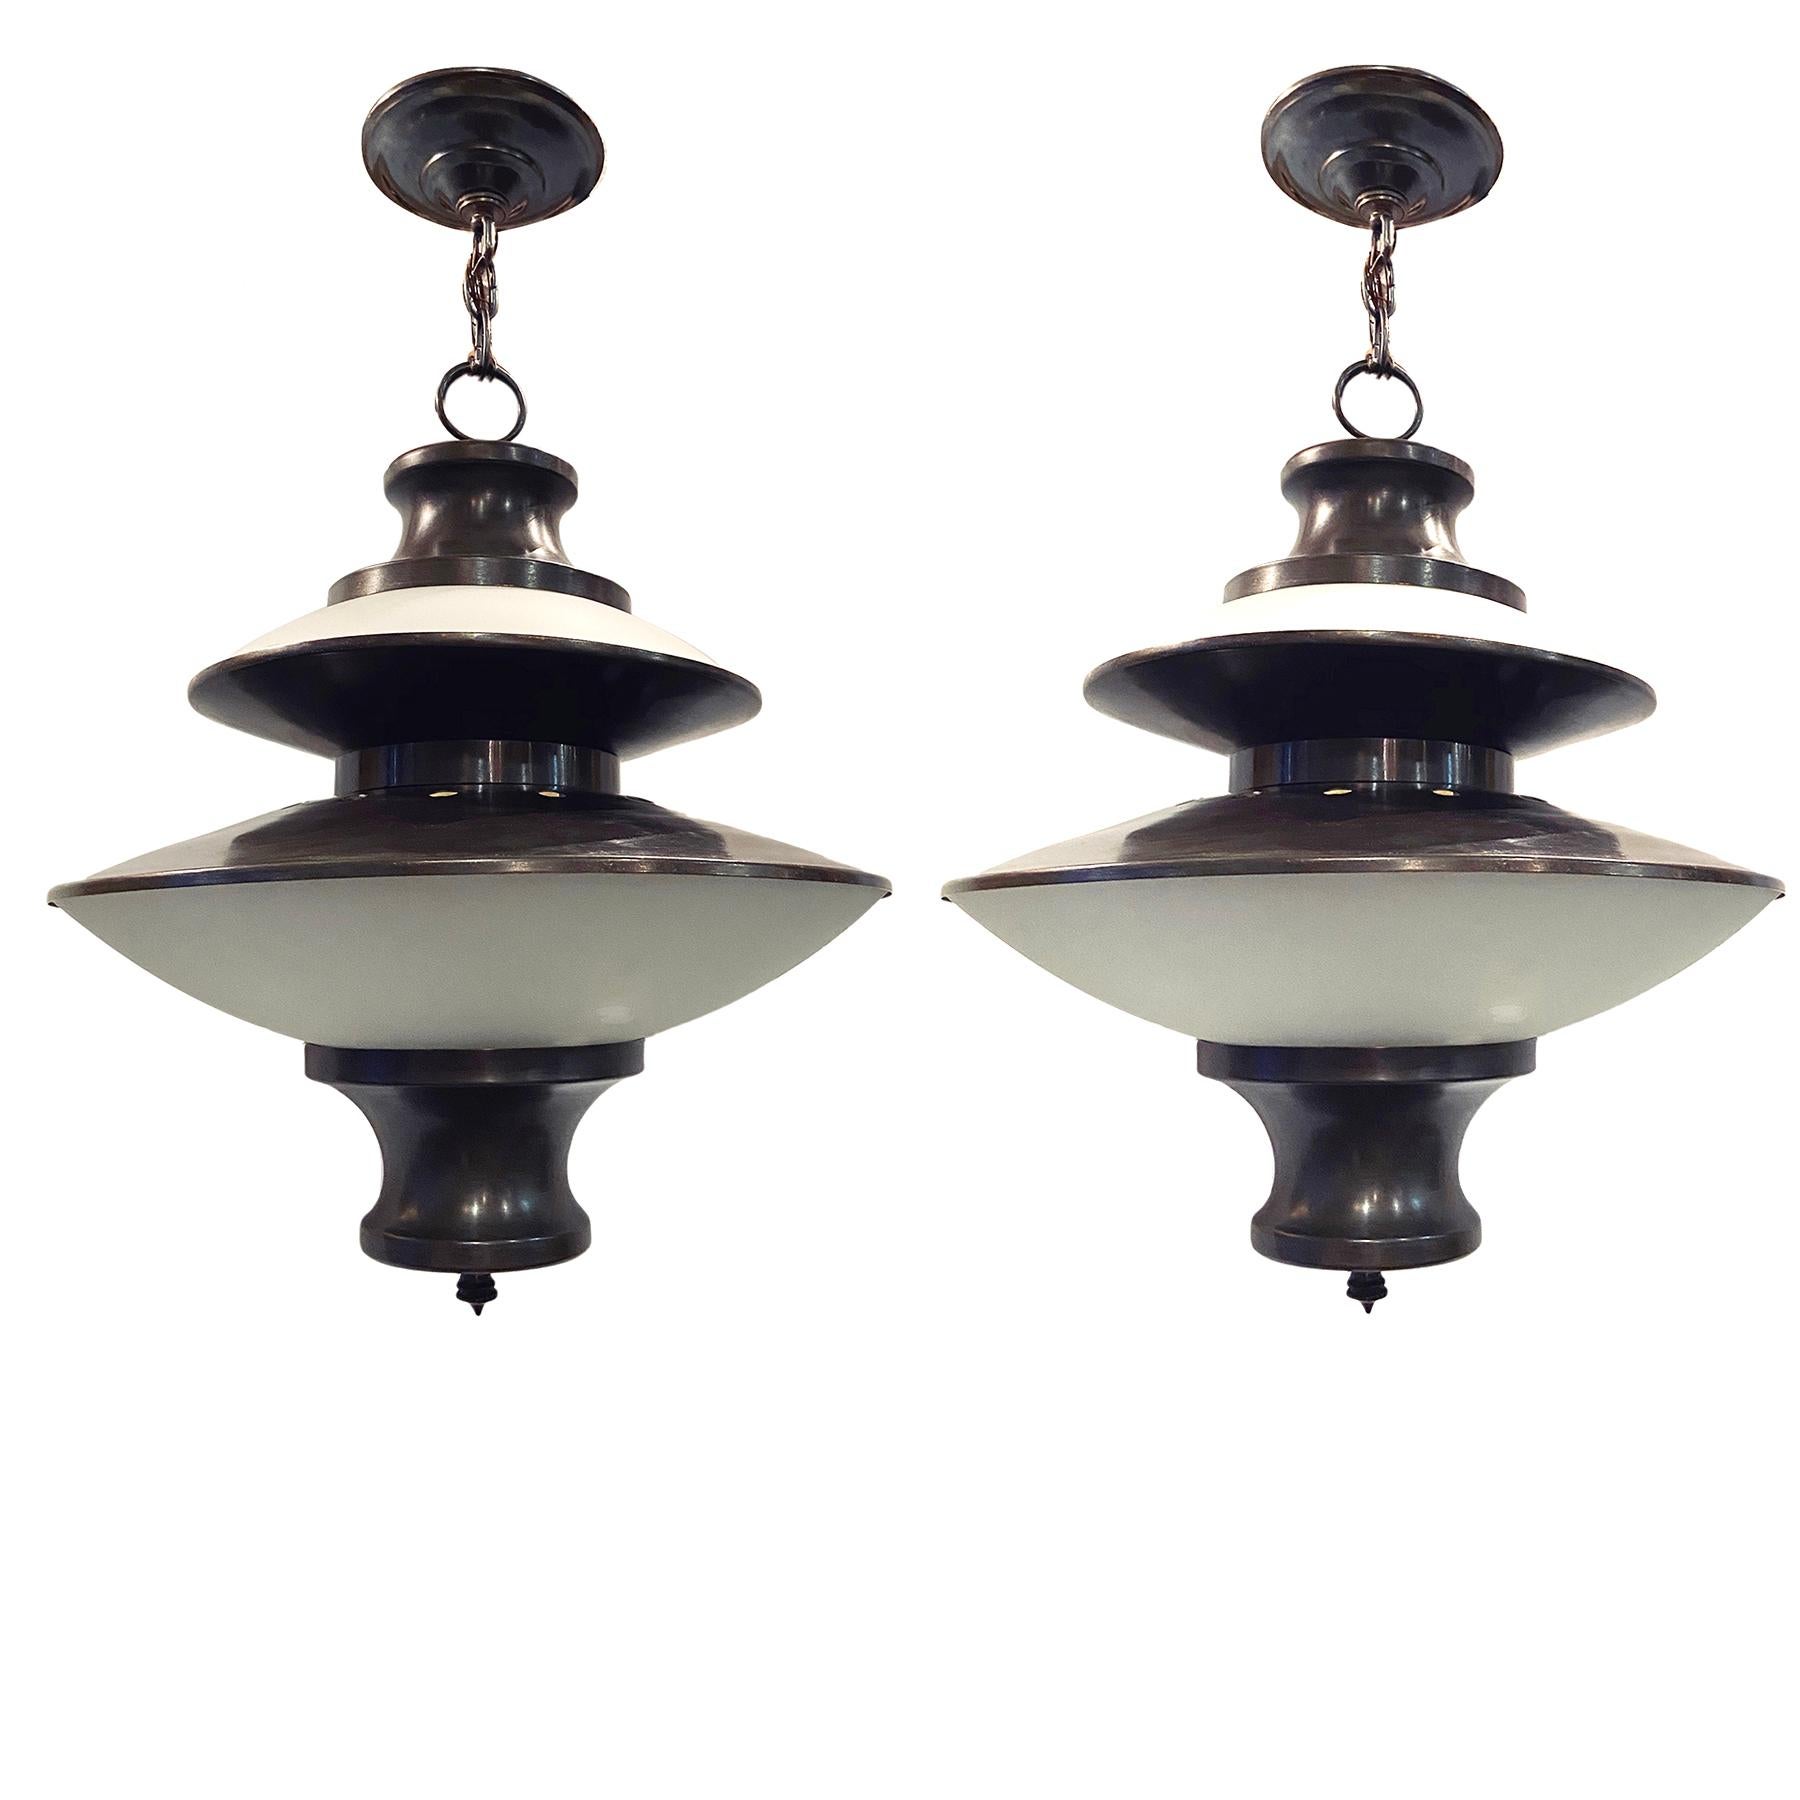 Ein Satz von sechs italienischen Leuchten aus patinierter Bronze aus den 1950er Jahren mit Milchglas und Innenbeleuchtung. Einzelverkauf.

Abmessungen:
Durchmesser: 15